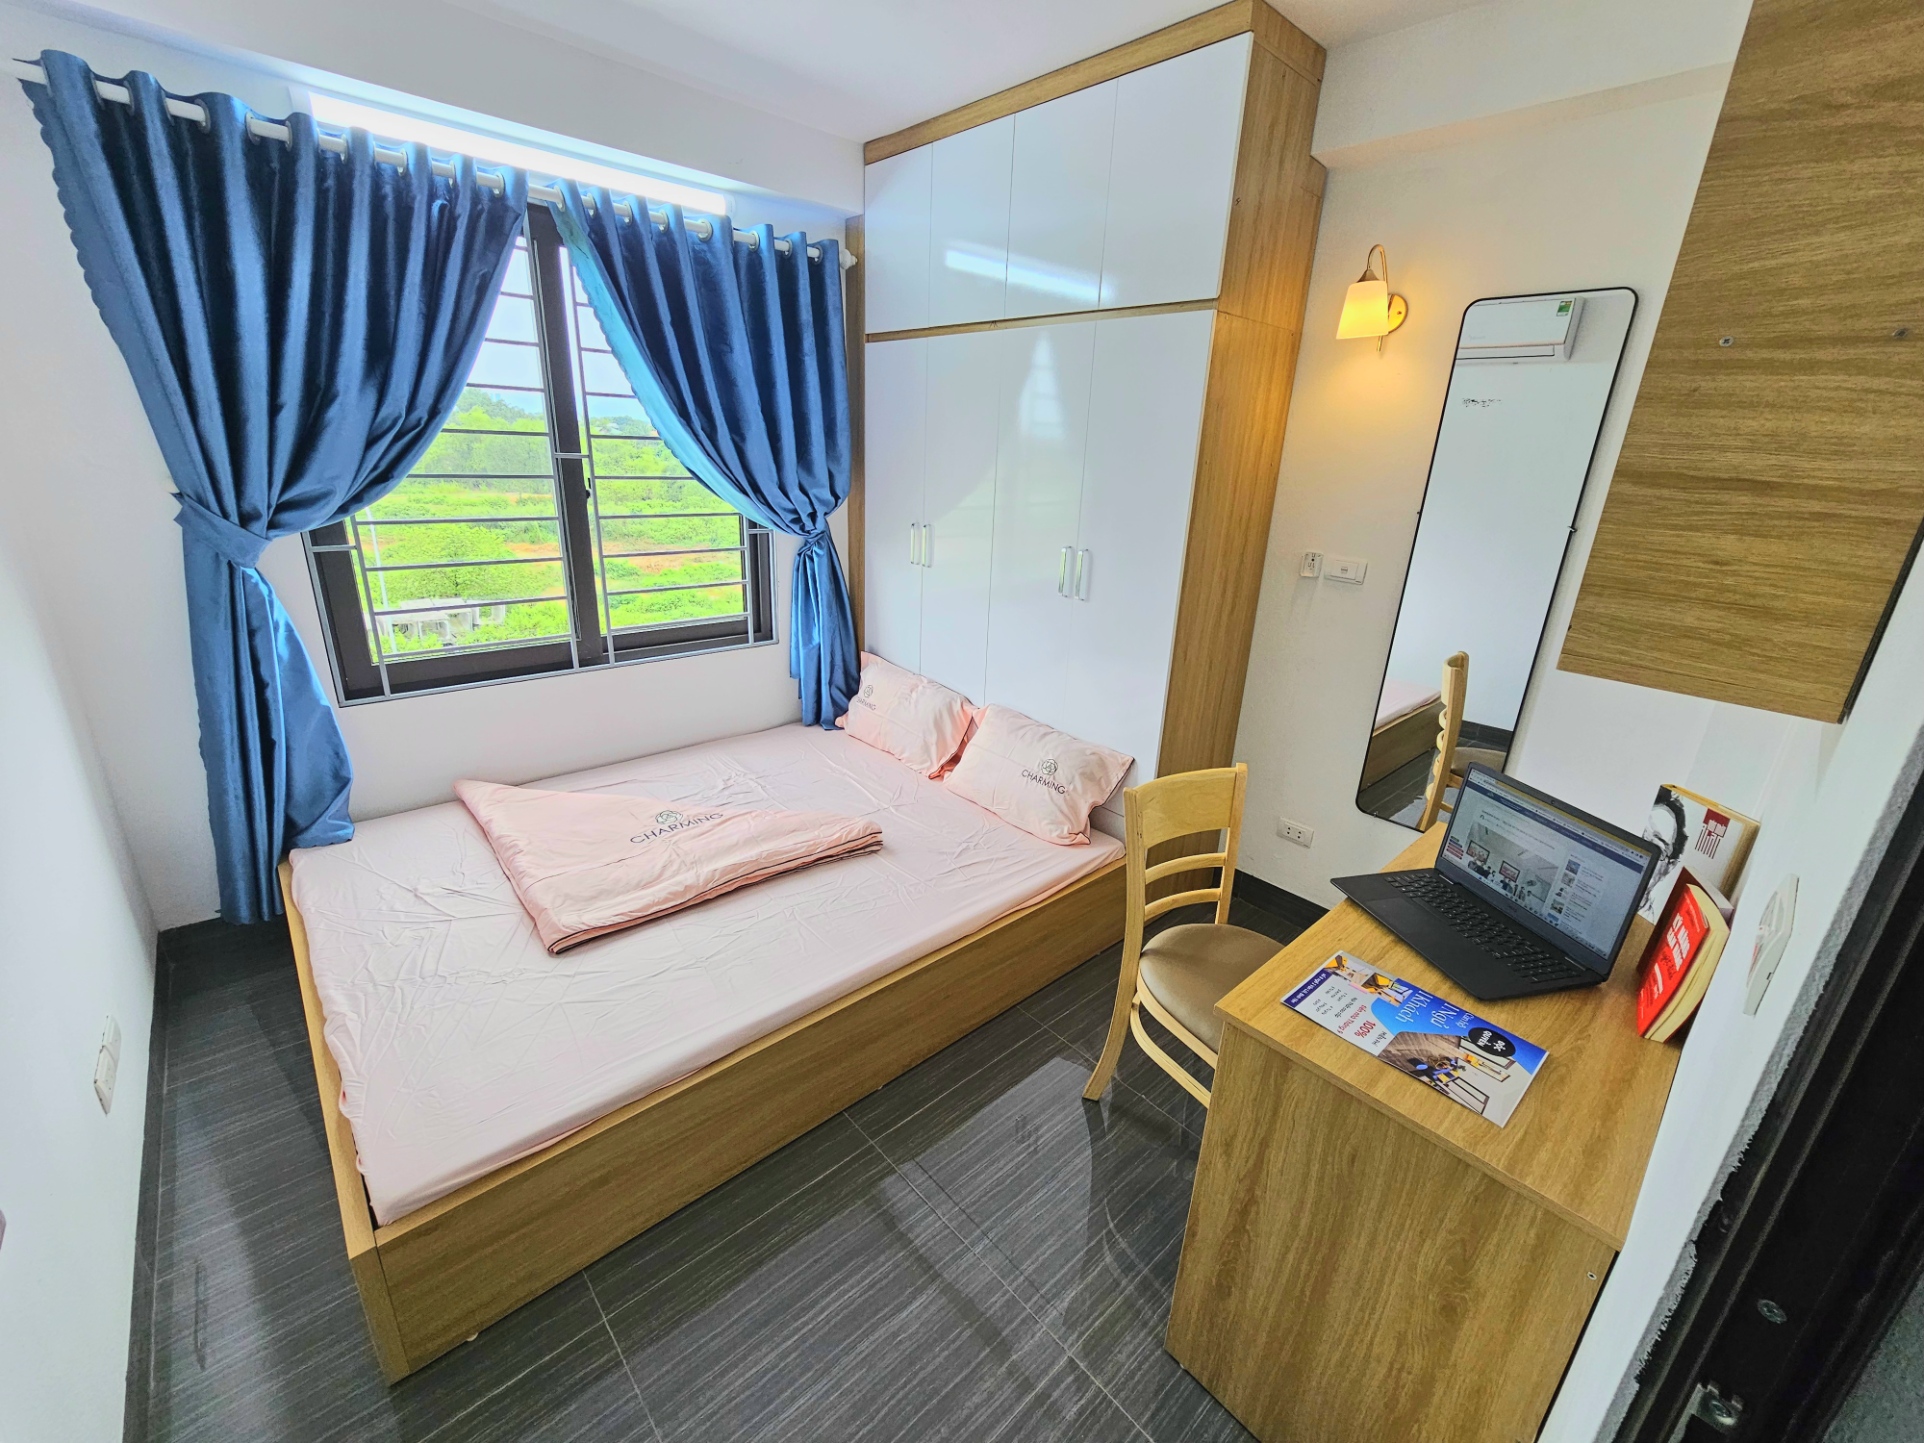 Căn phòng chung cư mini, giá rẻ, thiết kế 1 ngủ 1 khách hiện đại có duy nhất tại Hòa lạc.